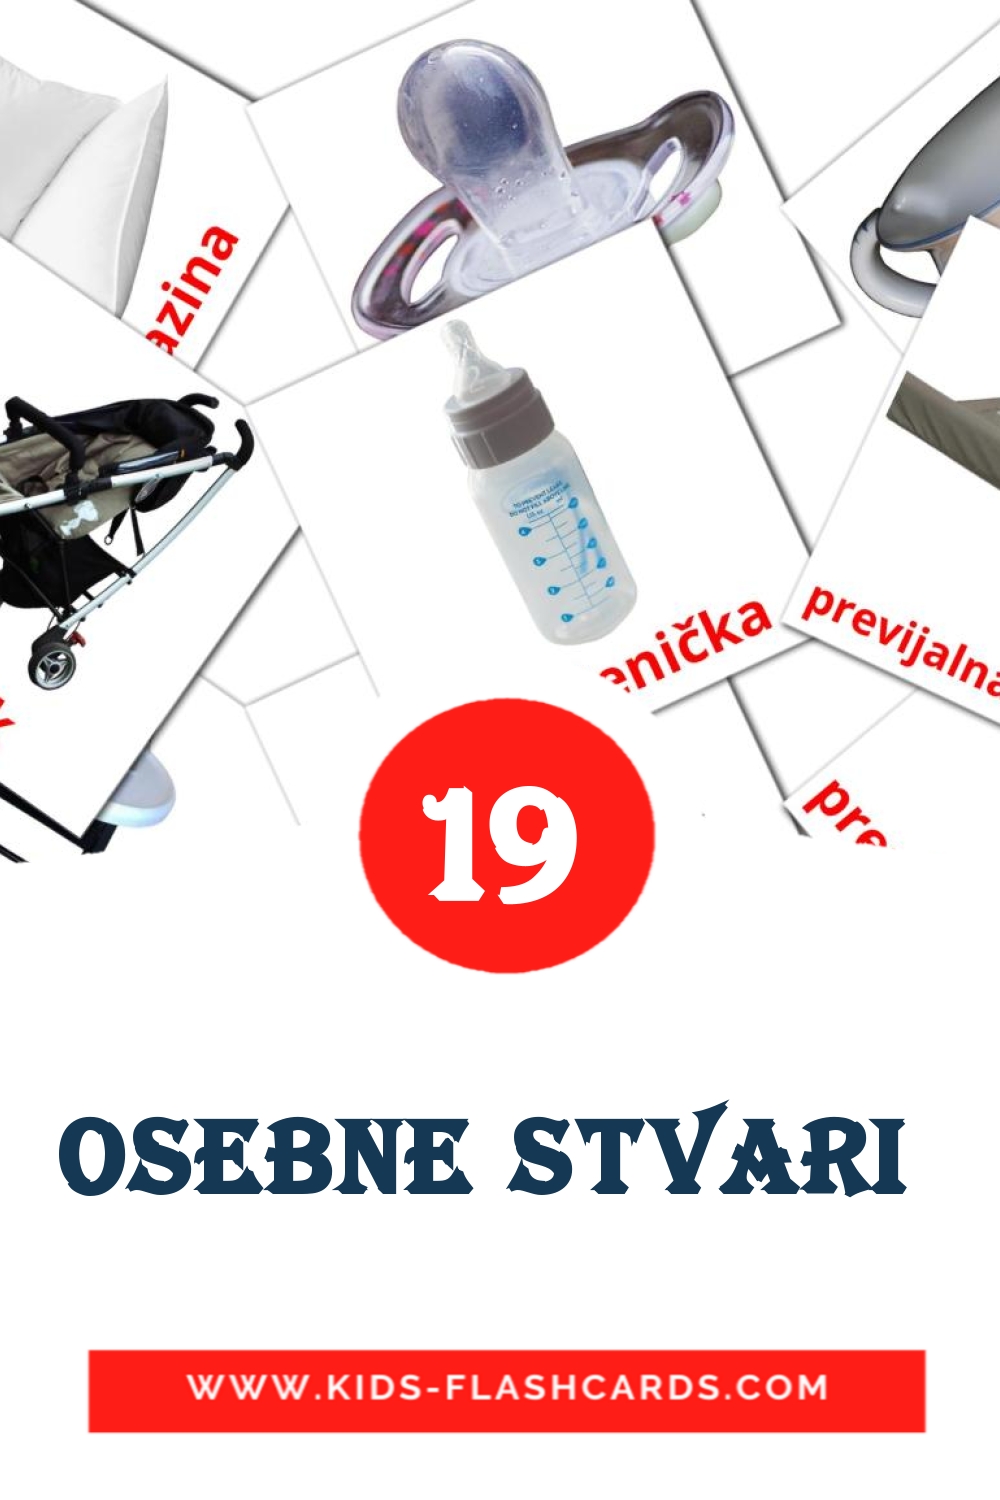 19 tarjetas didacticas de Osebne stvari  para el jardín de infancia en esloveno